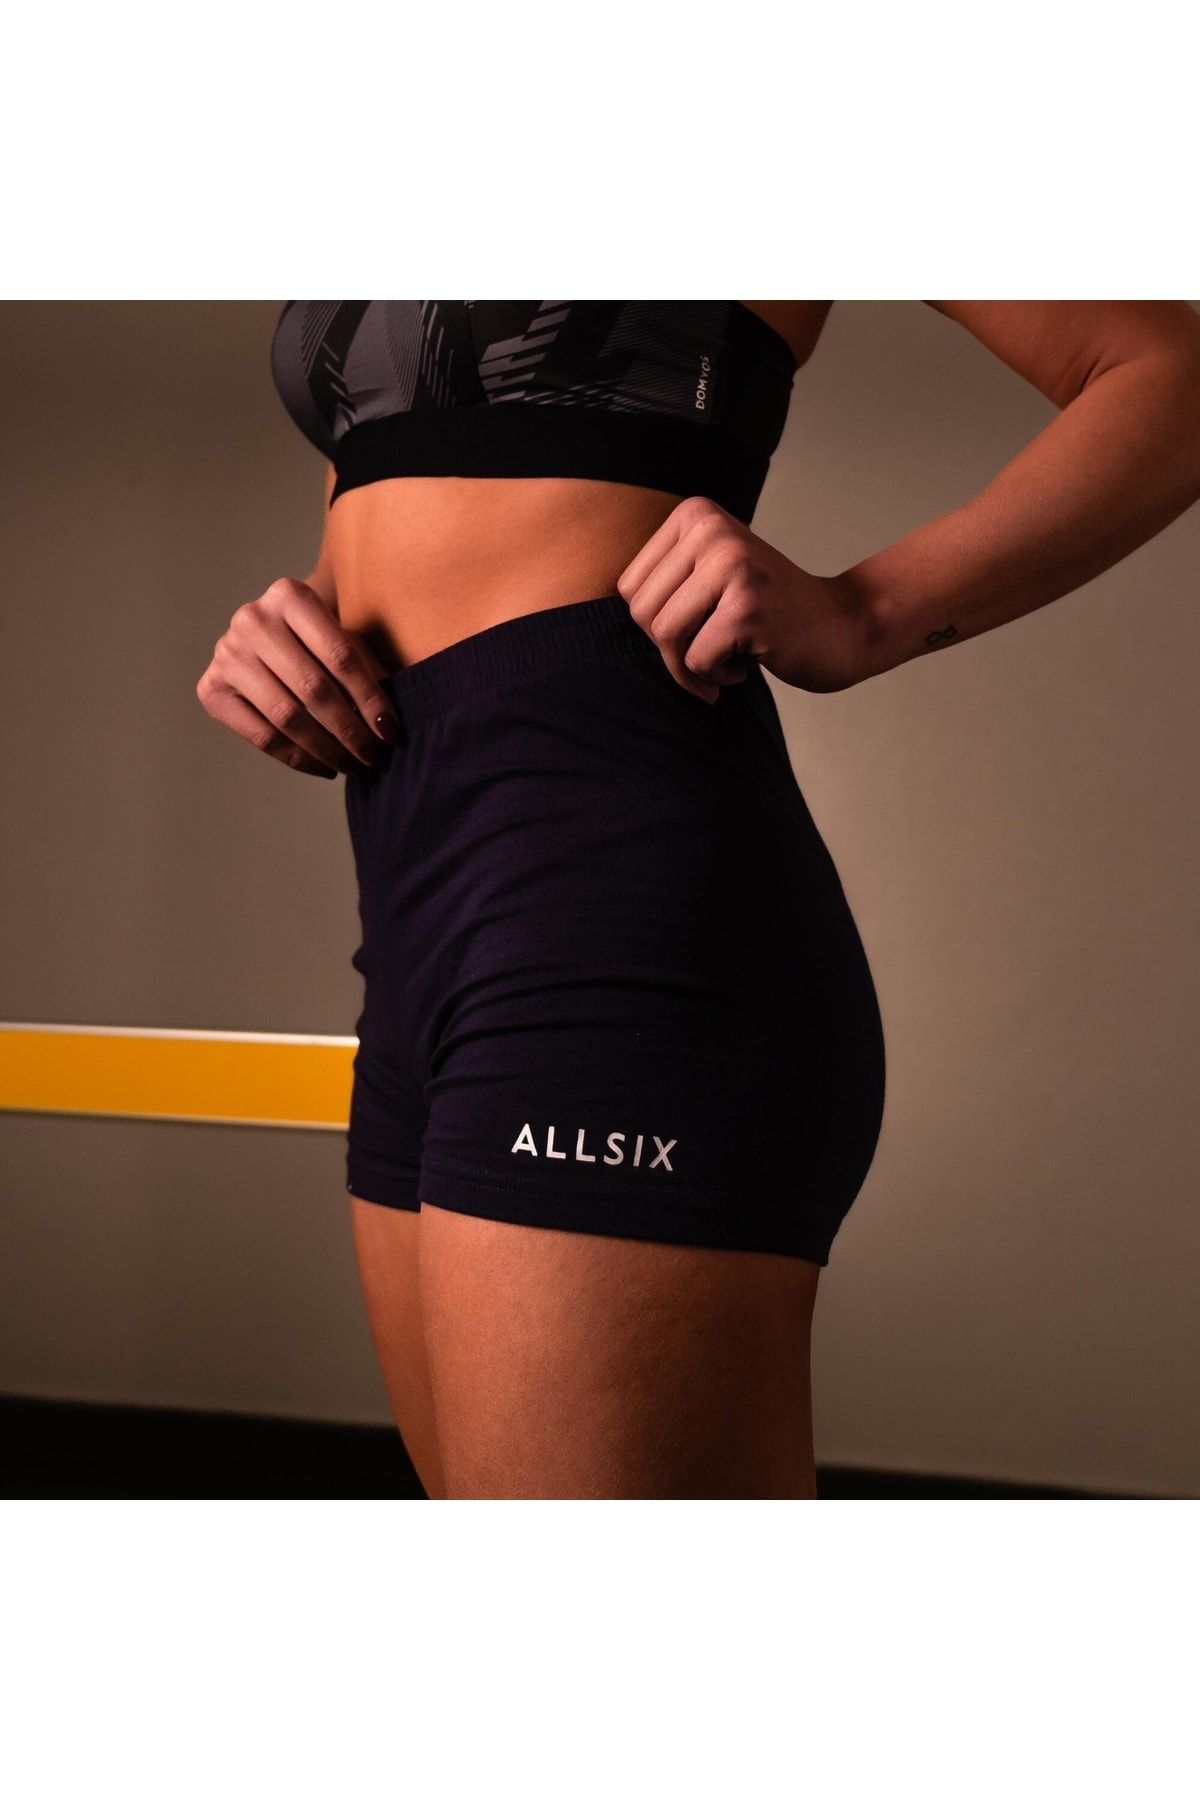 Decathlon Allsix Kadın Voleybol Şortu Çok Hafif Hareket Özgürlüğü Nefes Alır Teri Dışarı Atar